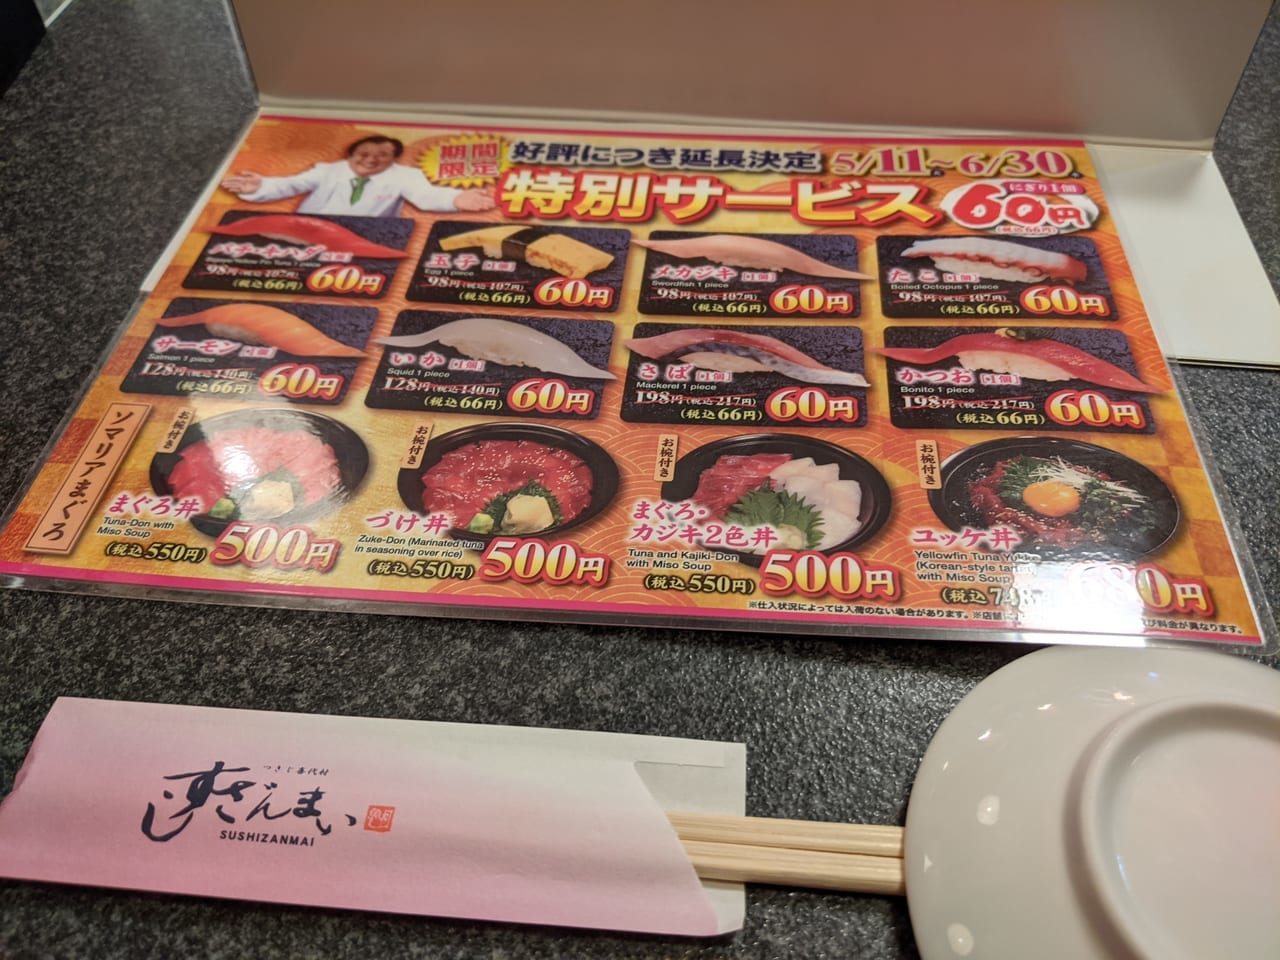 すしざんまいの60円寿司キャンペーンのメニュー